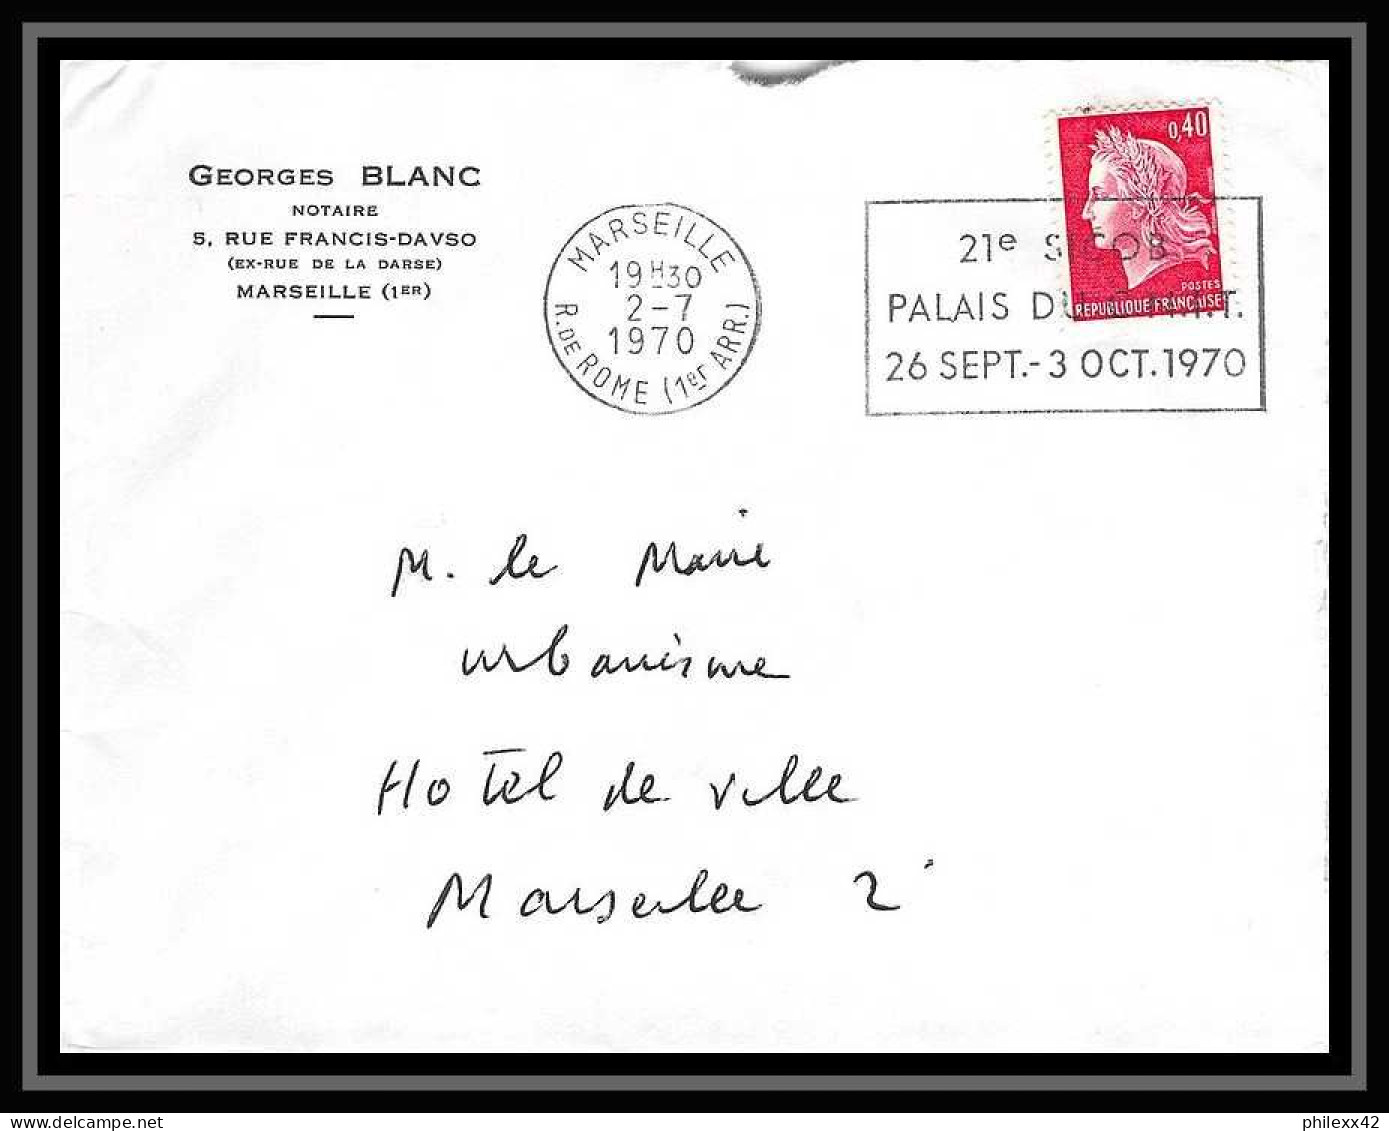 110678 lot de 18 Lettres Bouches du rhone Marseille rue de rome pour flammes et oblitérations 